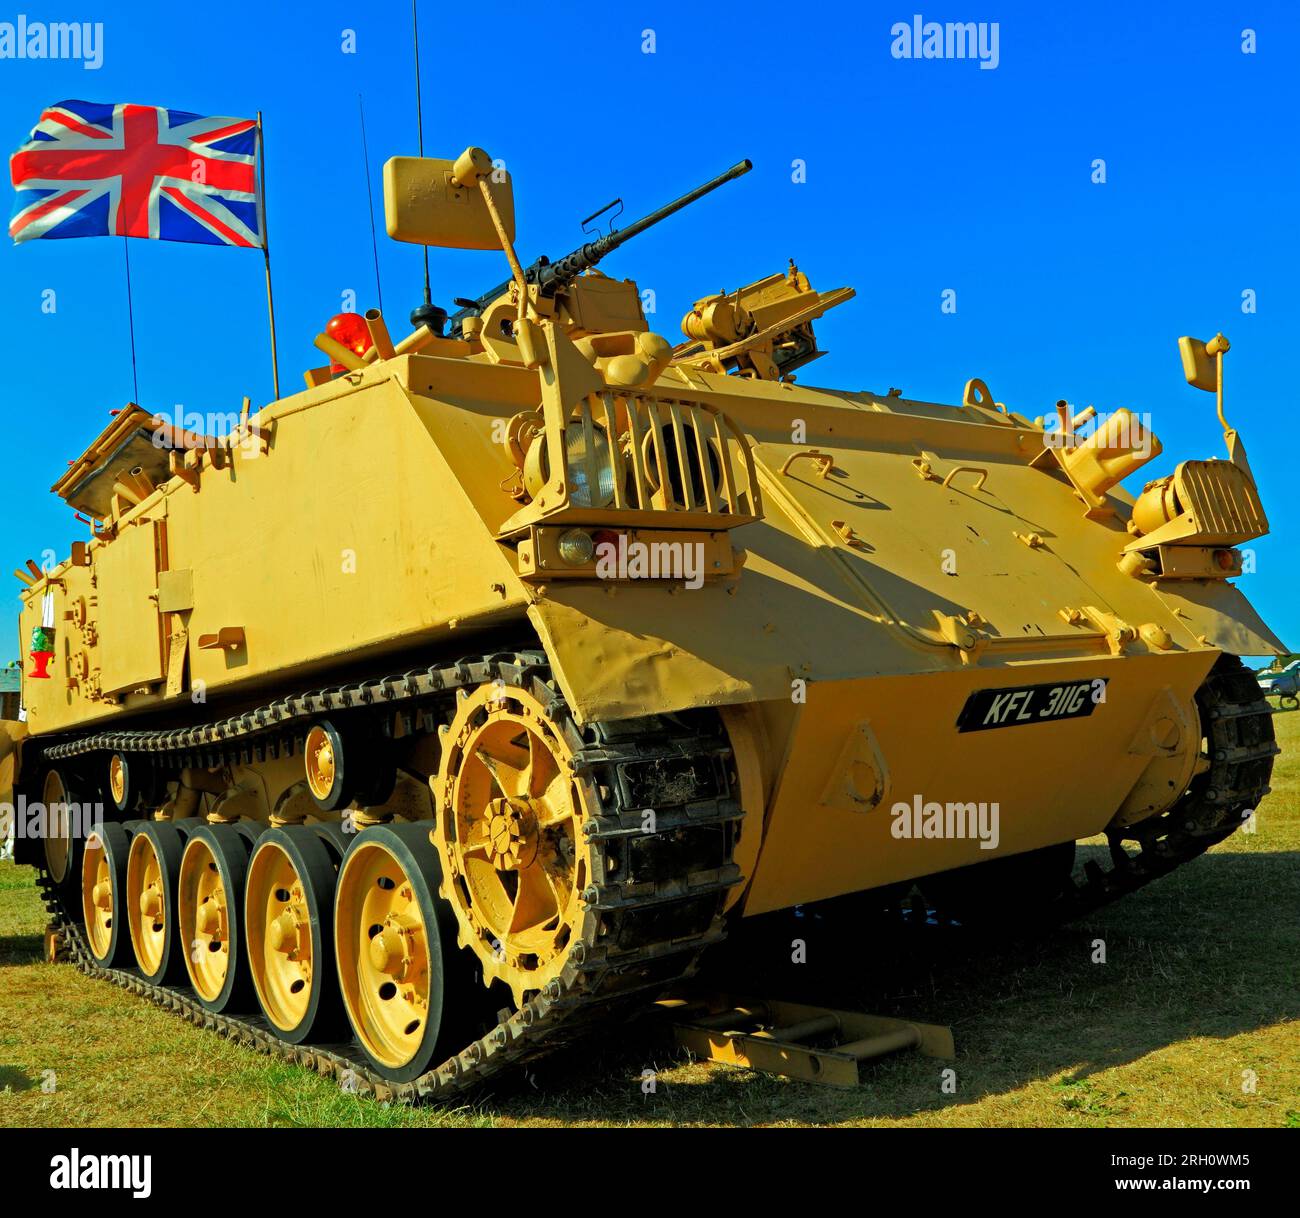 British 432 Tank, veicolo militare, servito nel primo conflitto in Iraq, armi, bandiera Union Jack Foto Stock